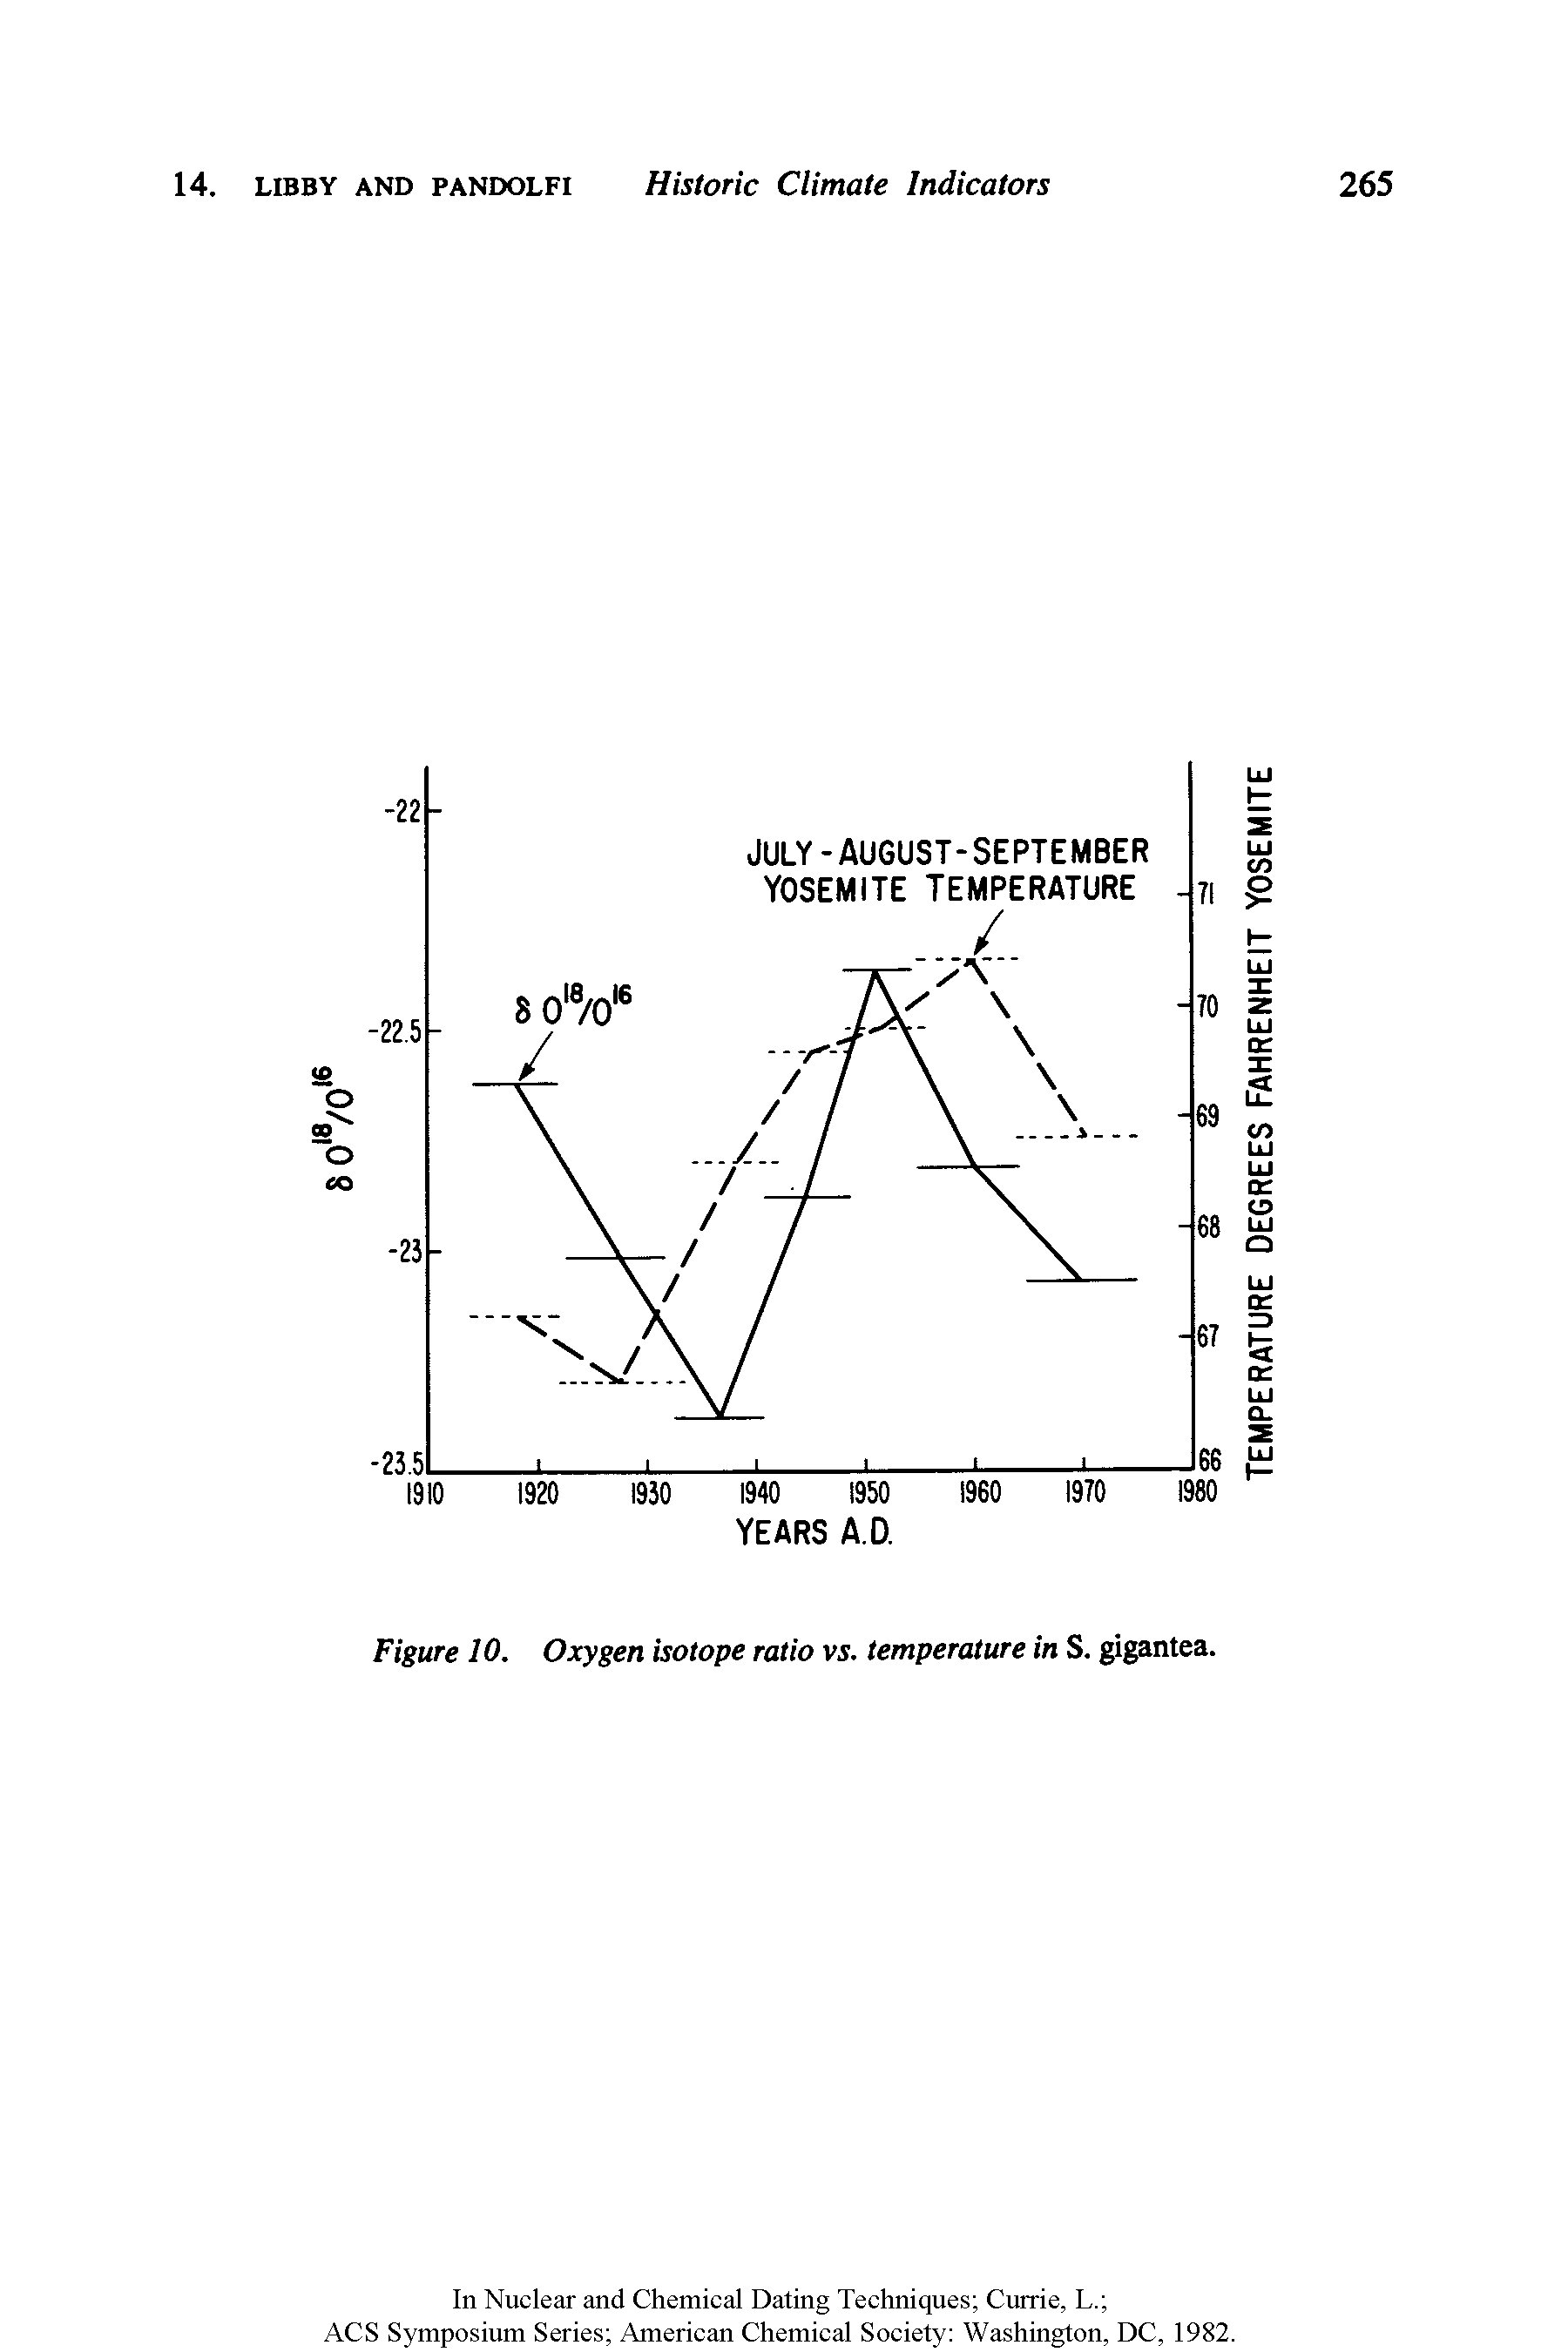 Figure 10. Oxygen isotope ratio vs. temperature in S. gigantea.